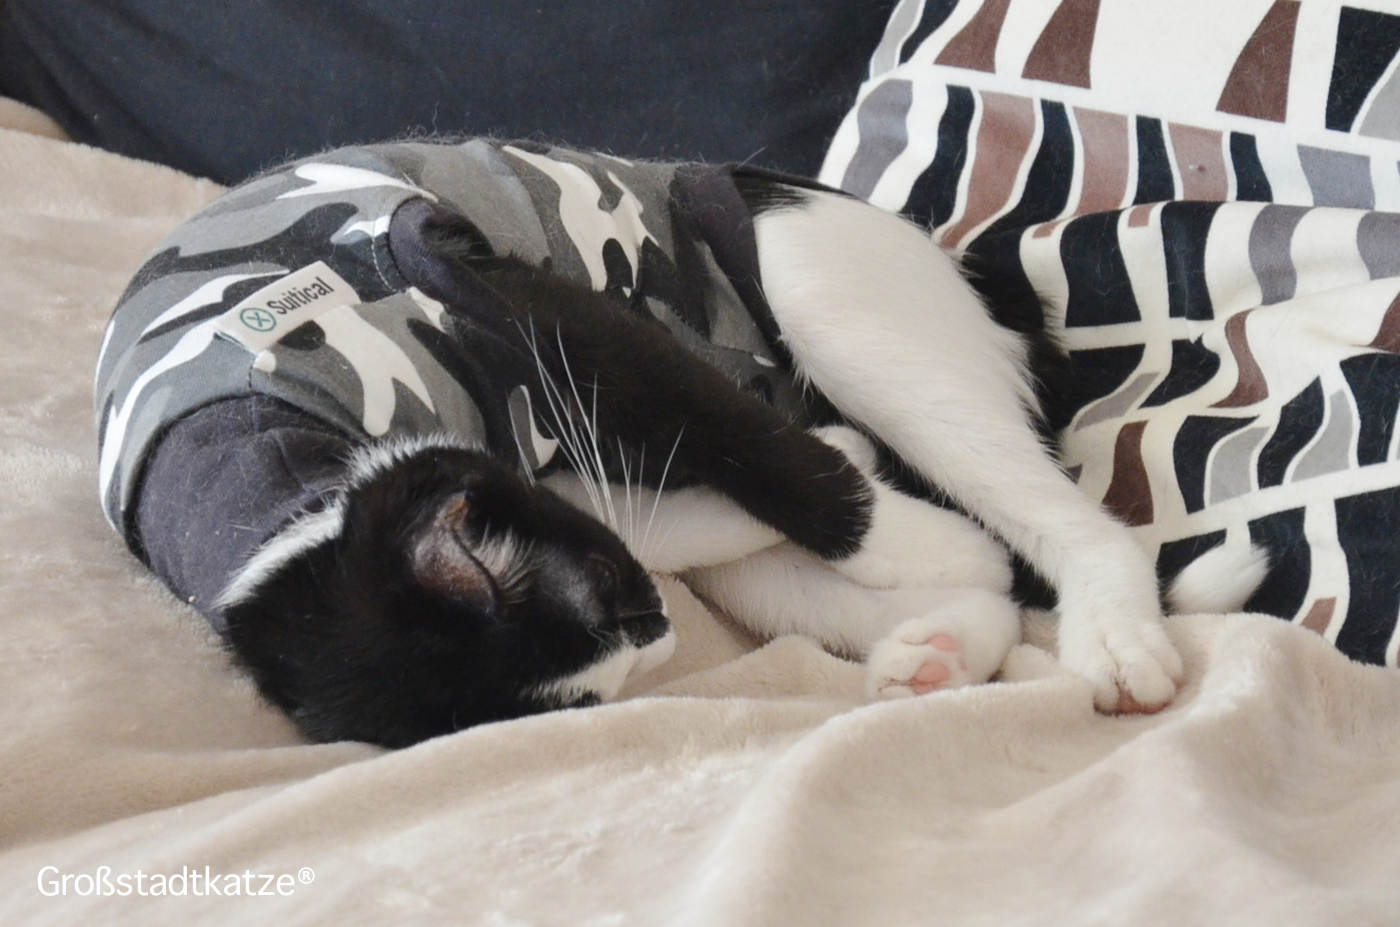 Aufstiegshilfe: Rampe für Couch von TRIXIE | Katze kommt nicht auf Sofa